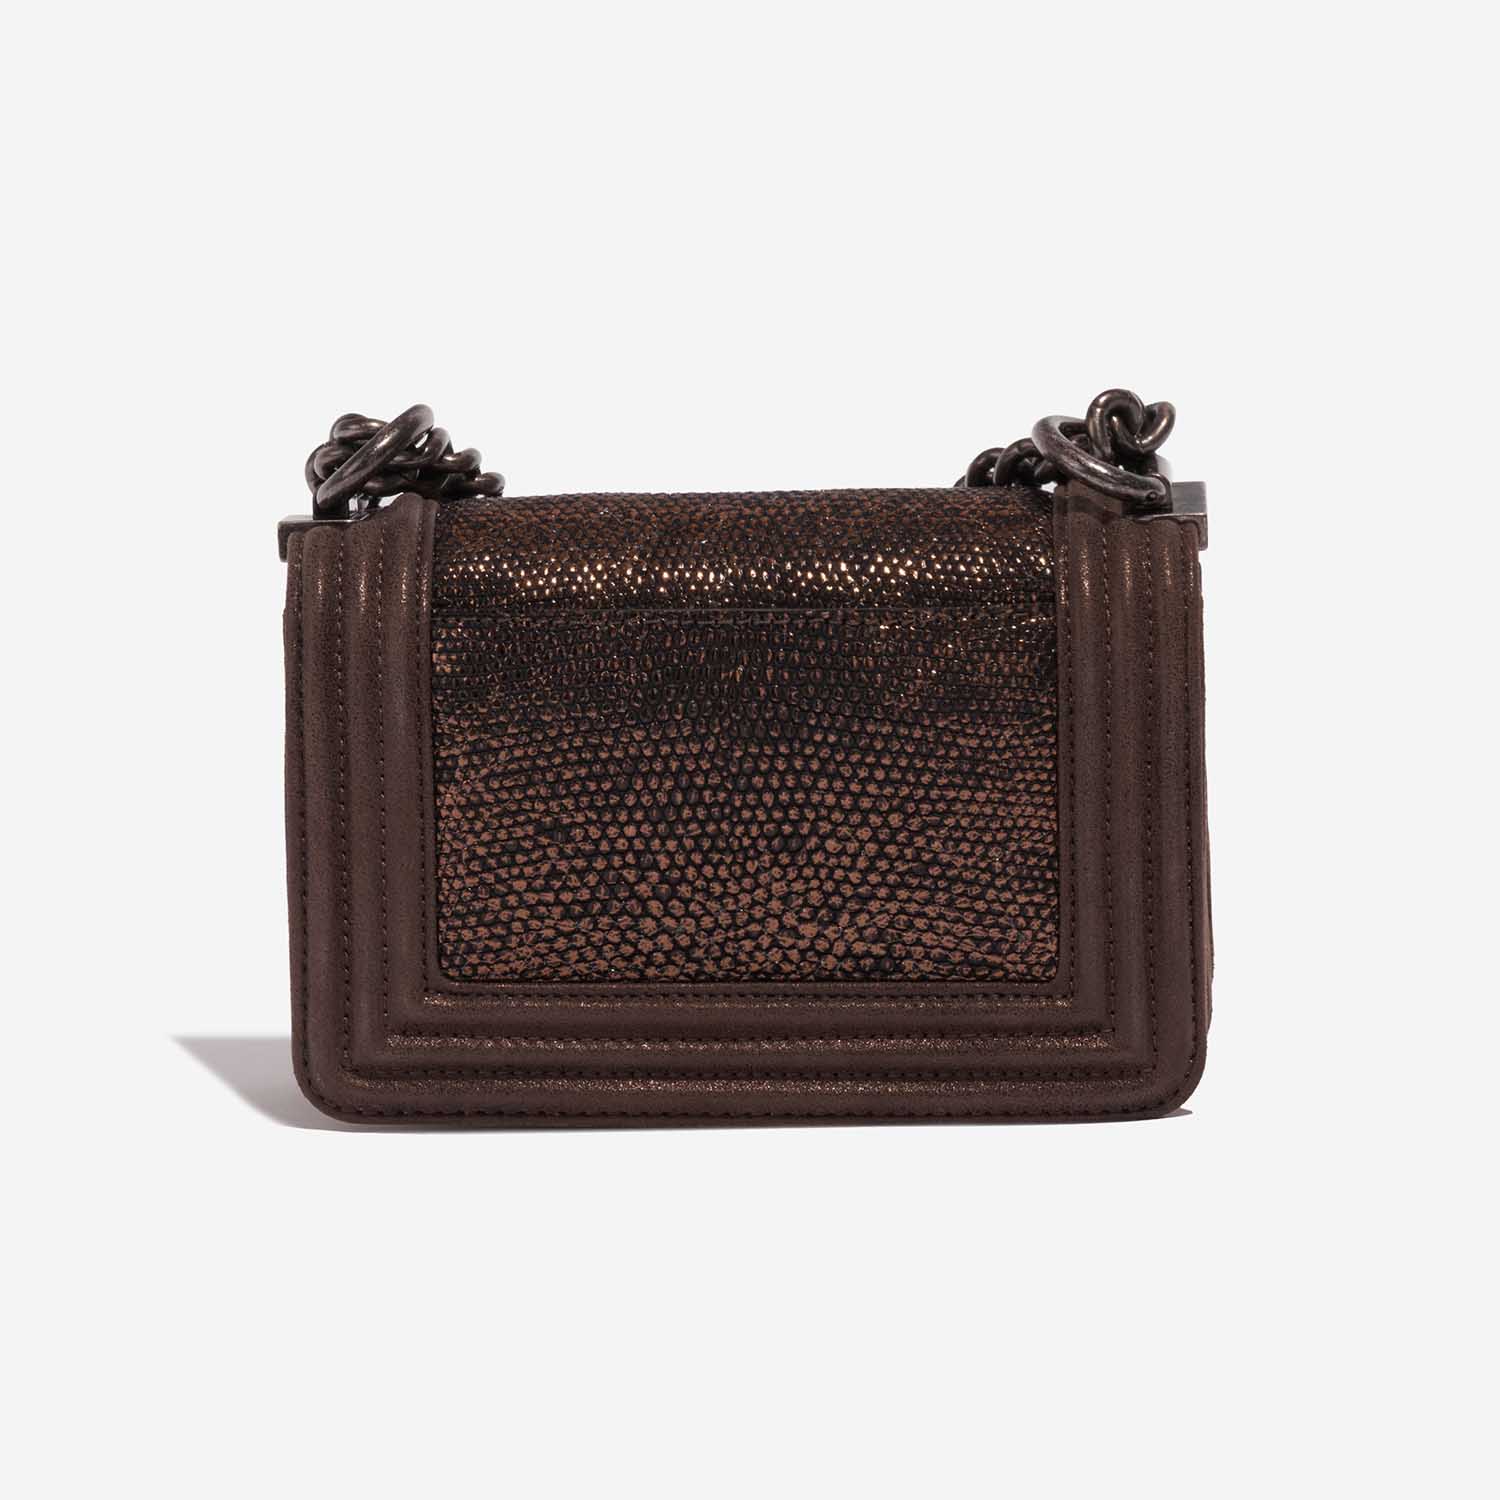 Chanel Boy Micro Brown-Gold Back | Verkaufen Sie Ihre Designer-Tasche auf Saclab.com